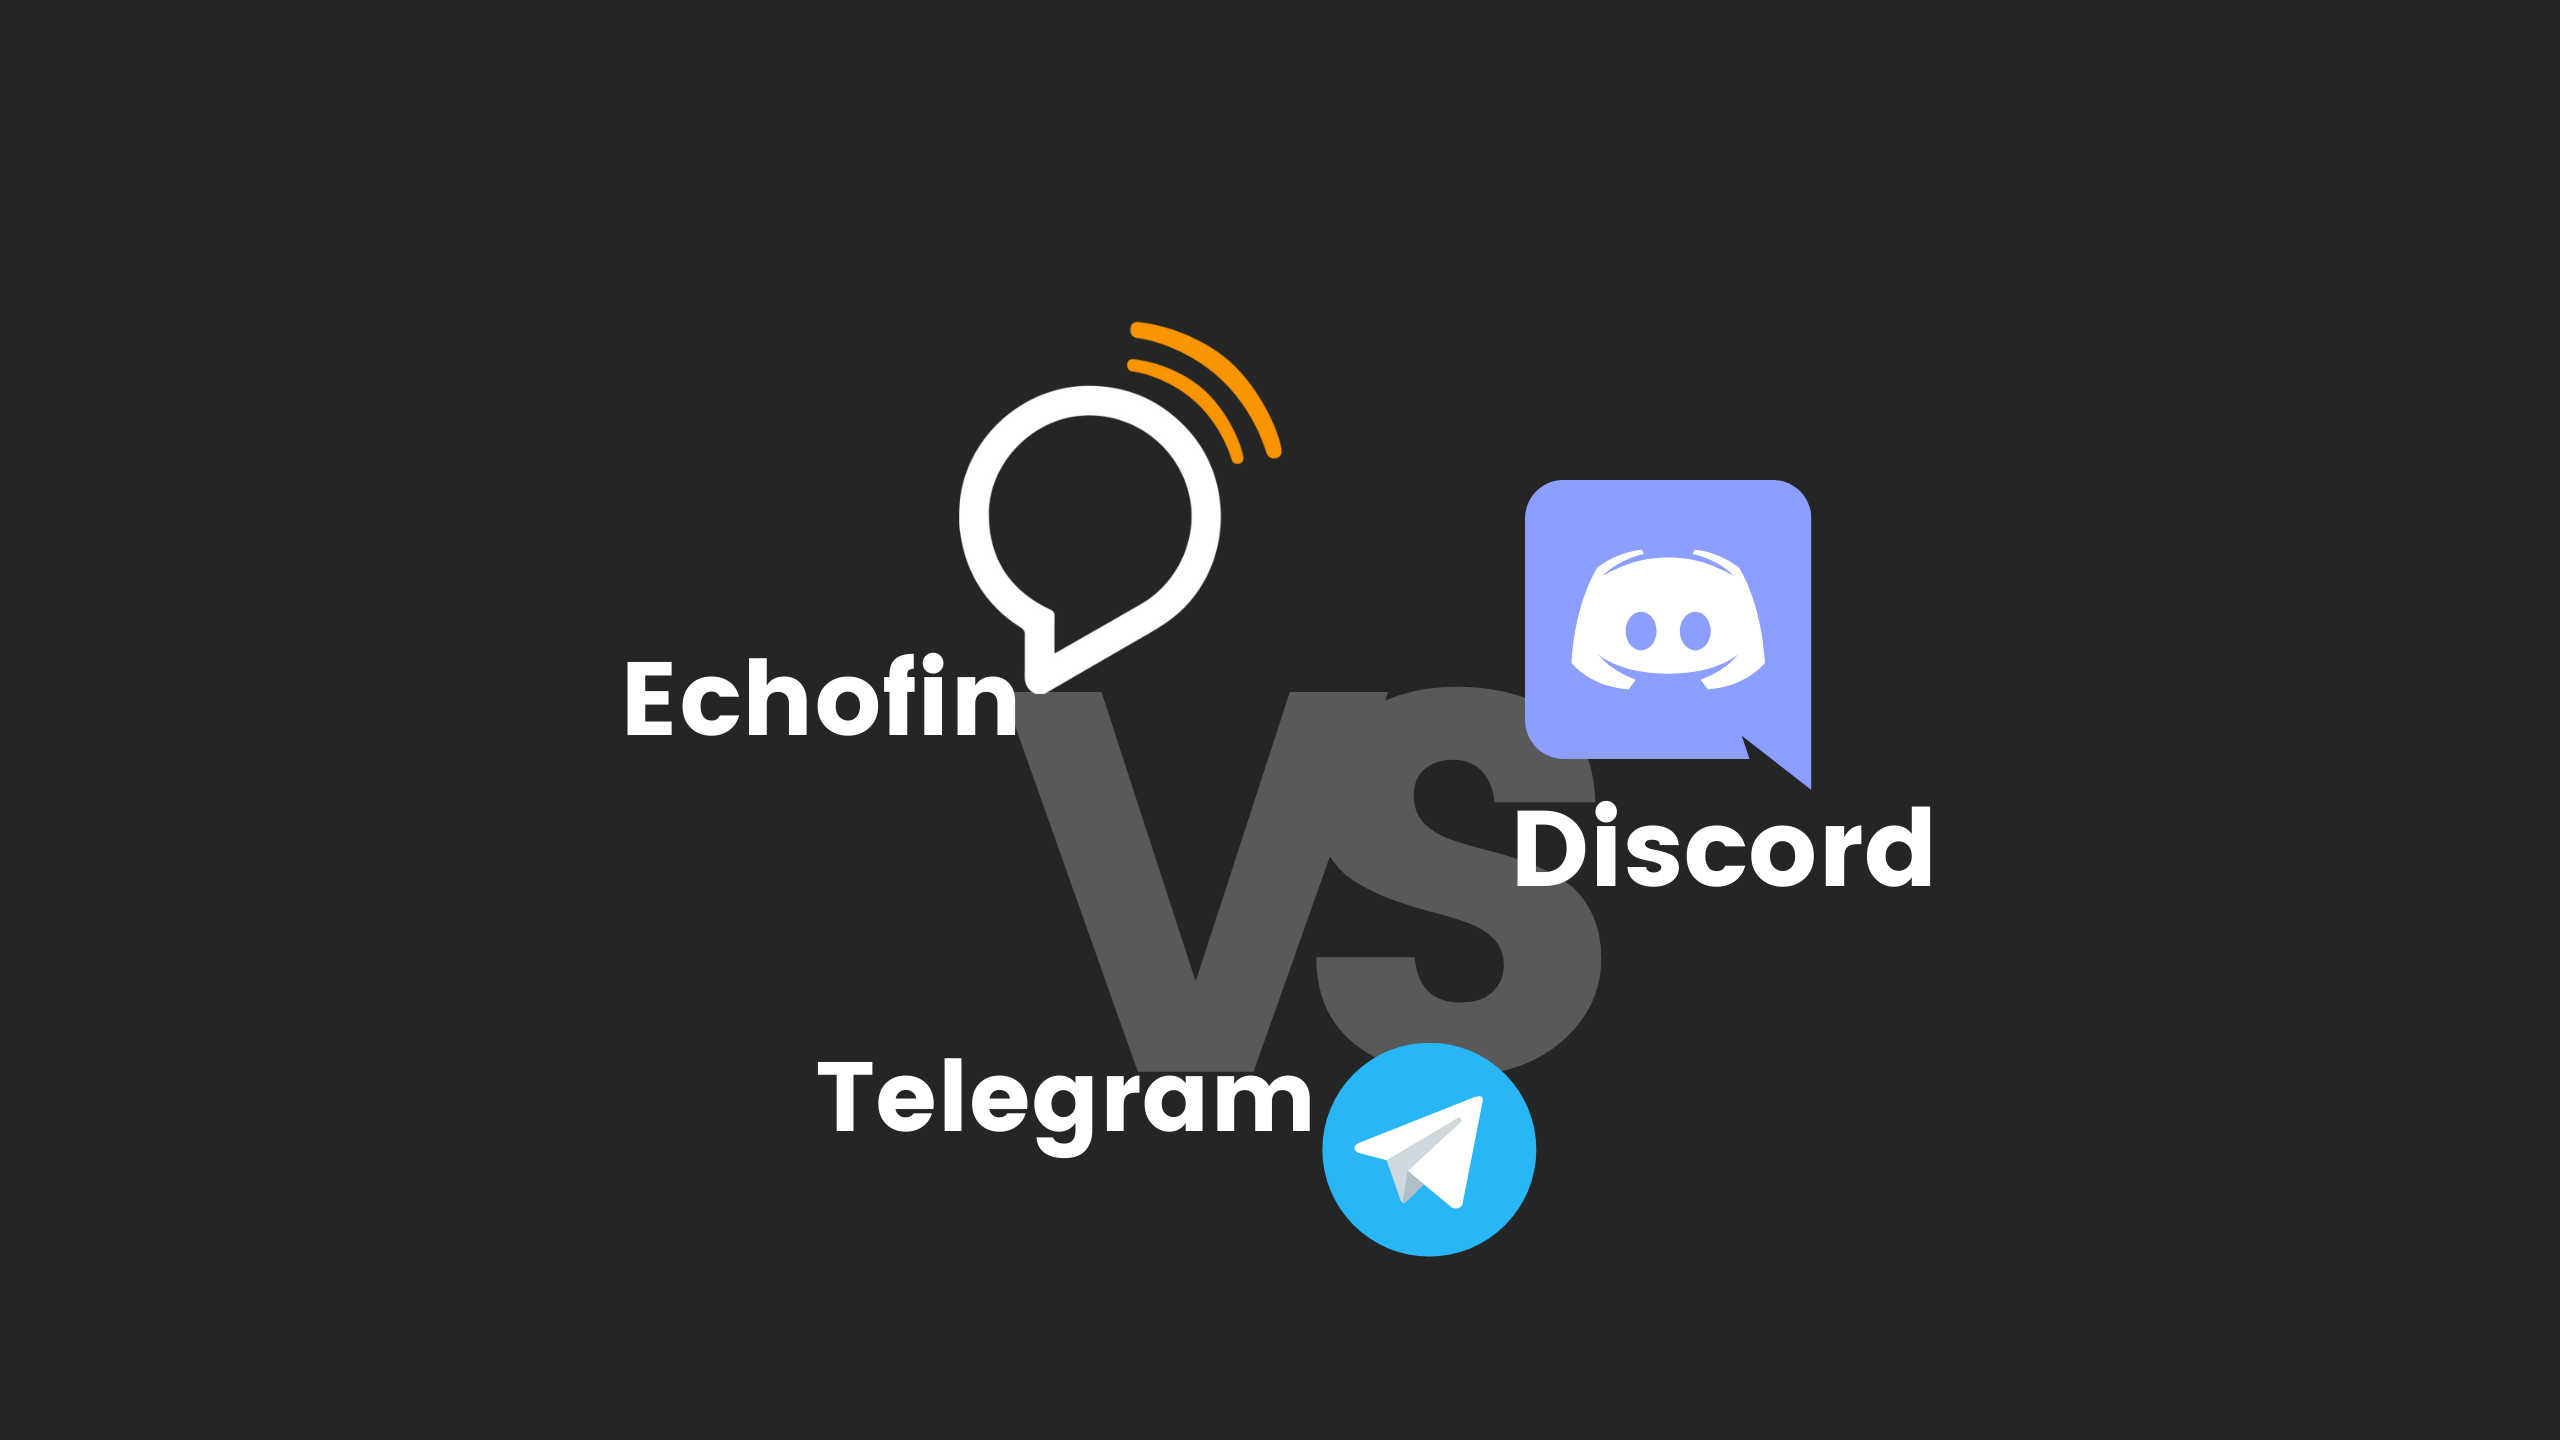 Telegram vs Discord – the Great Debate in Crypto